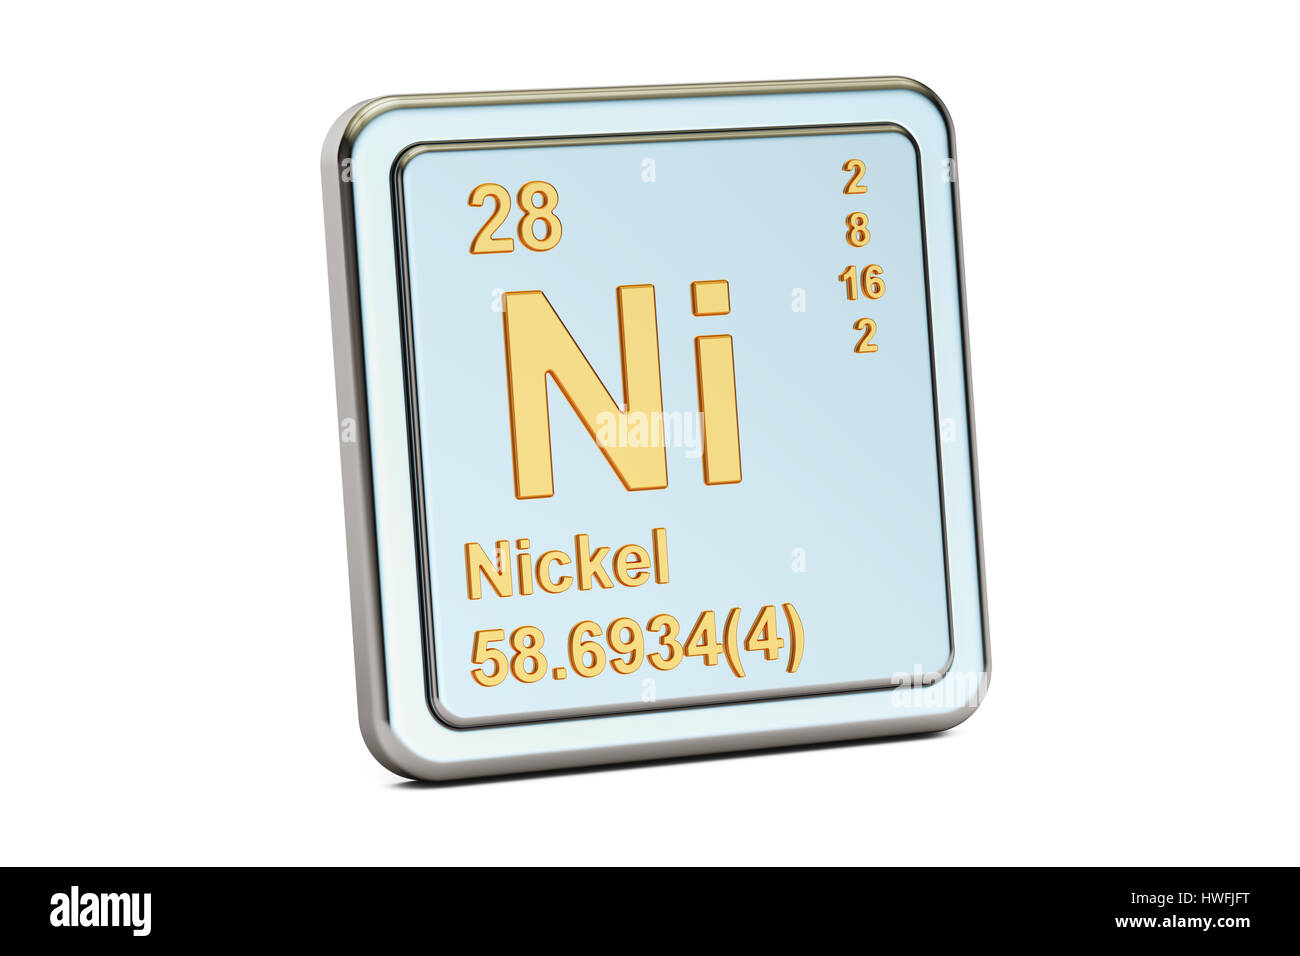 1 никел вый увес стый. Никель значок. Никель химический элемент. Ni никель. Никель химический элемент знак.